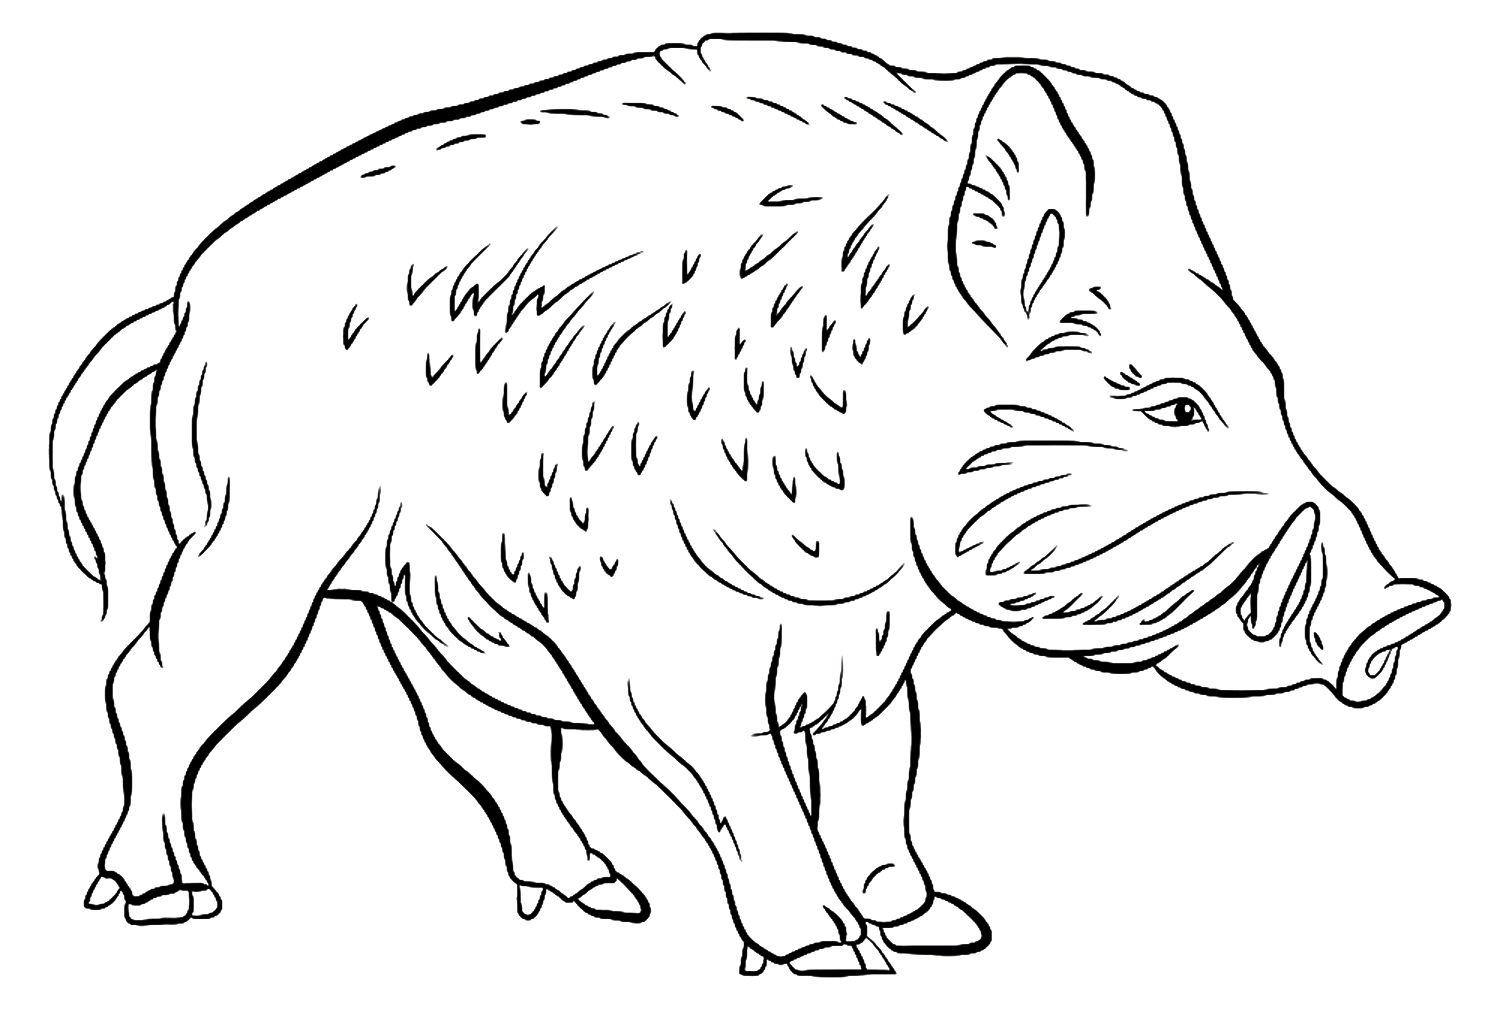 Realistisches Wildschwein von Boar